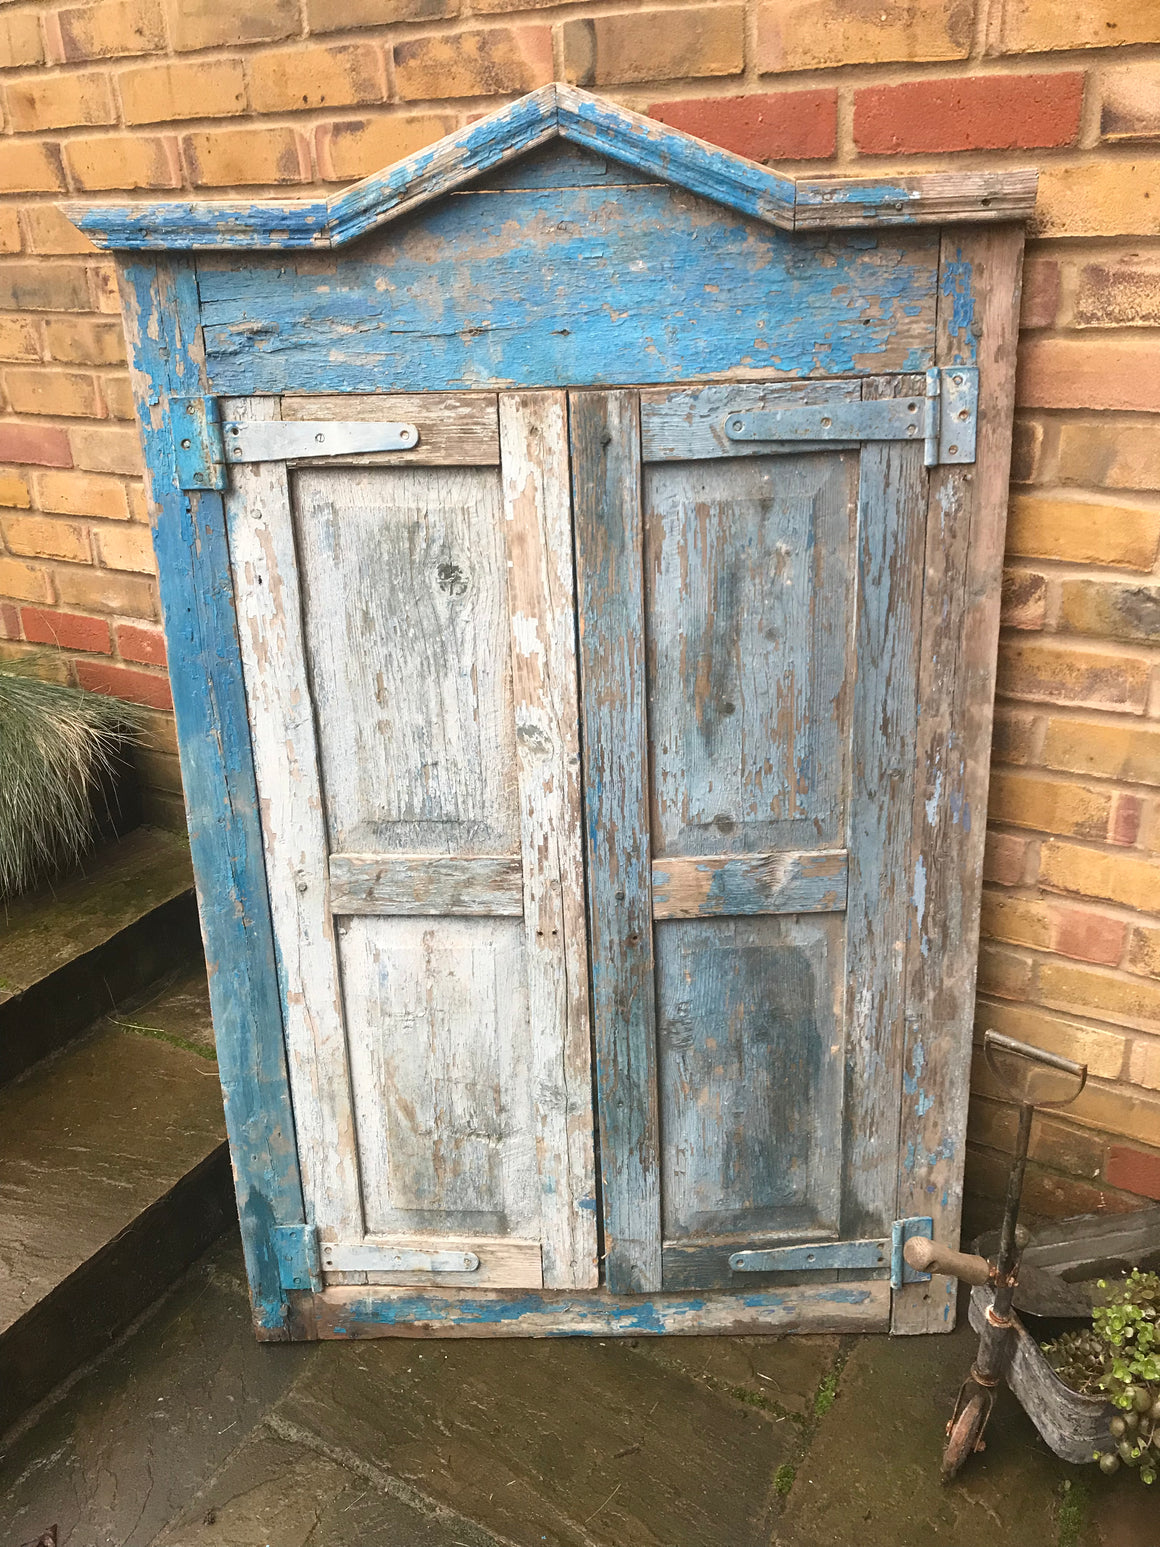 A salvaged blue door or window